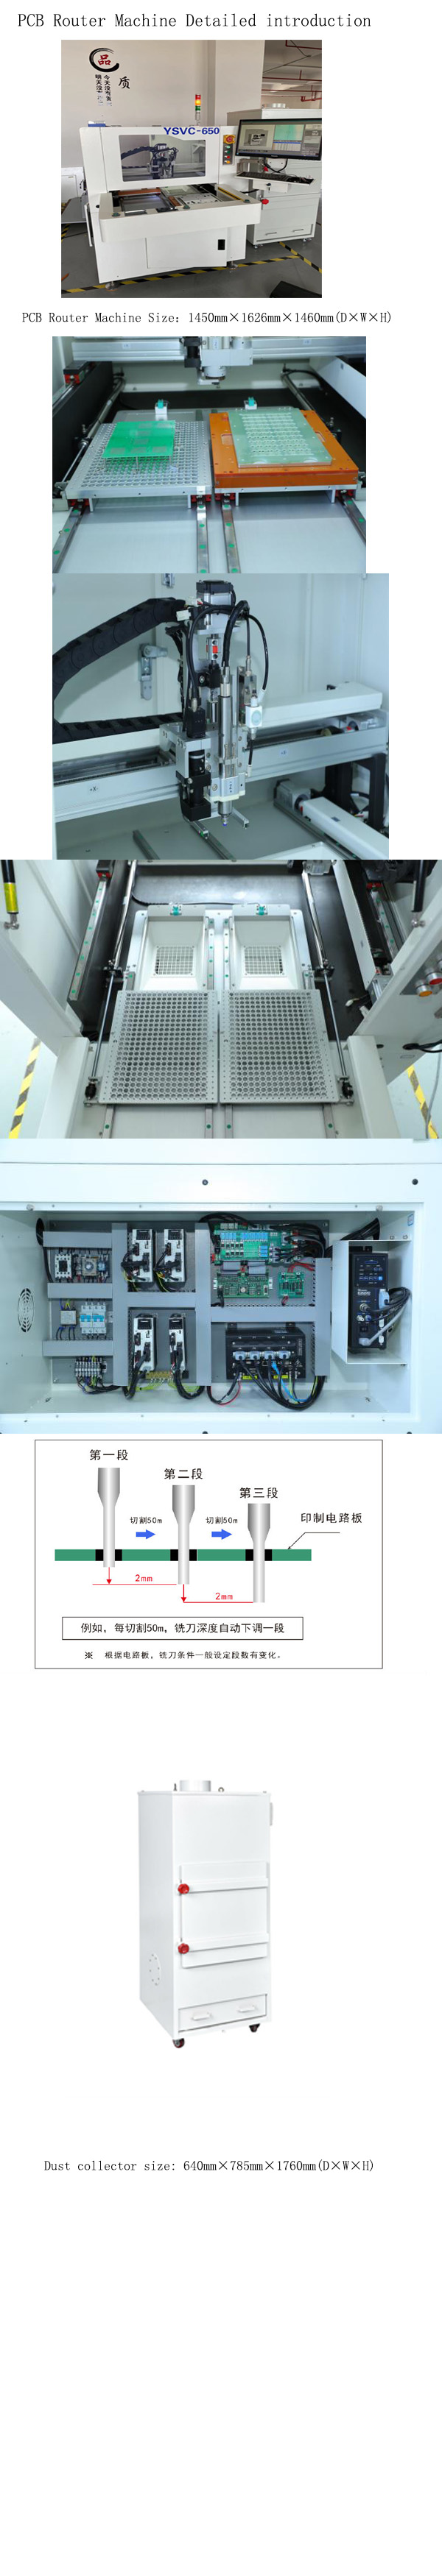 YSVC-650-PCBA Router Machine300x350mm